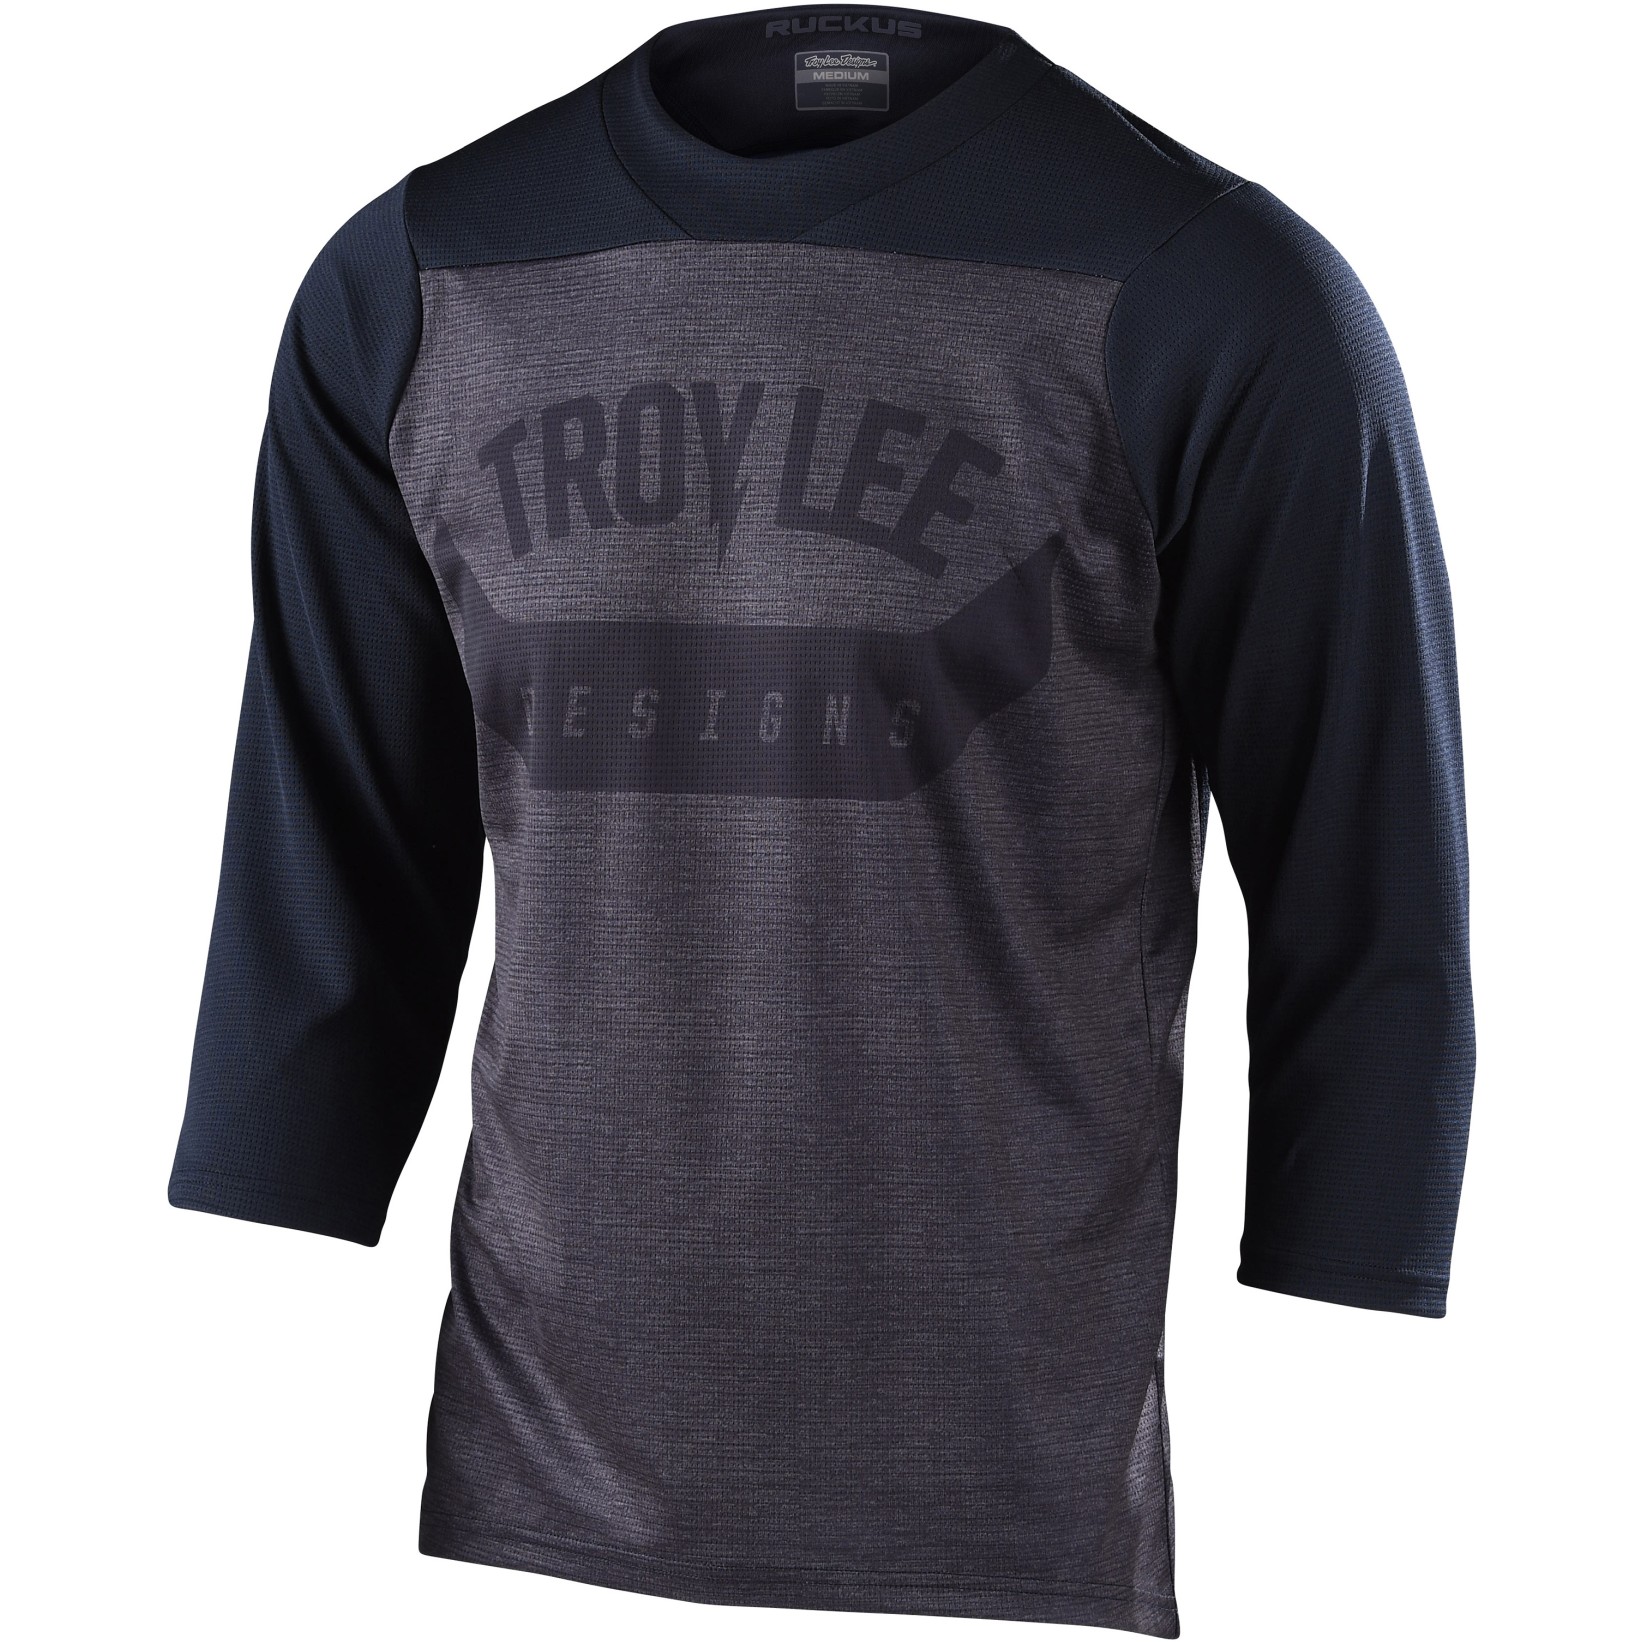 Foto van Troy Lee Designs Ruckus Shirt met 3/4-Mouwen - Arc Black